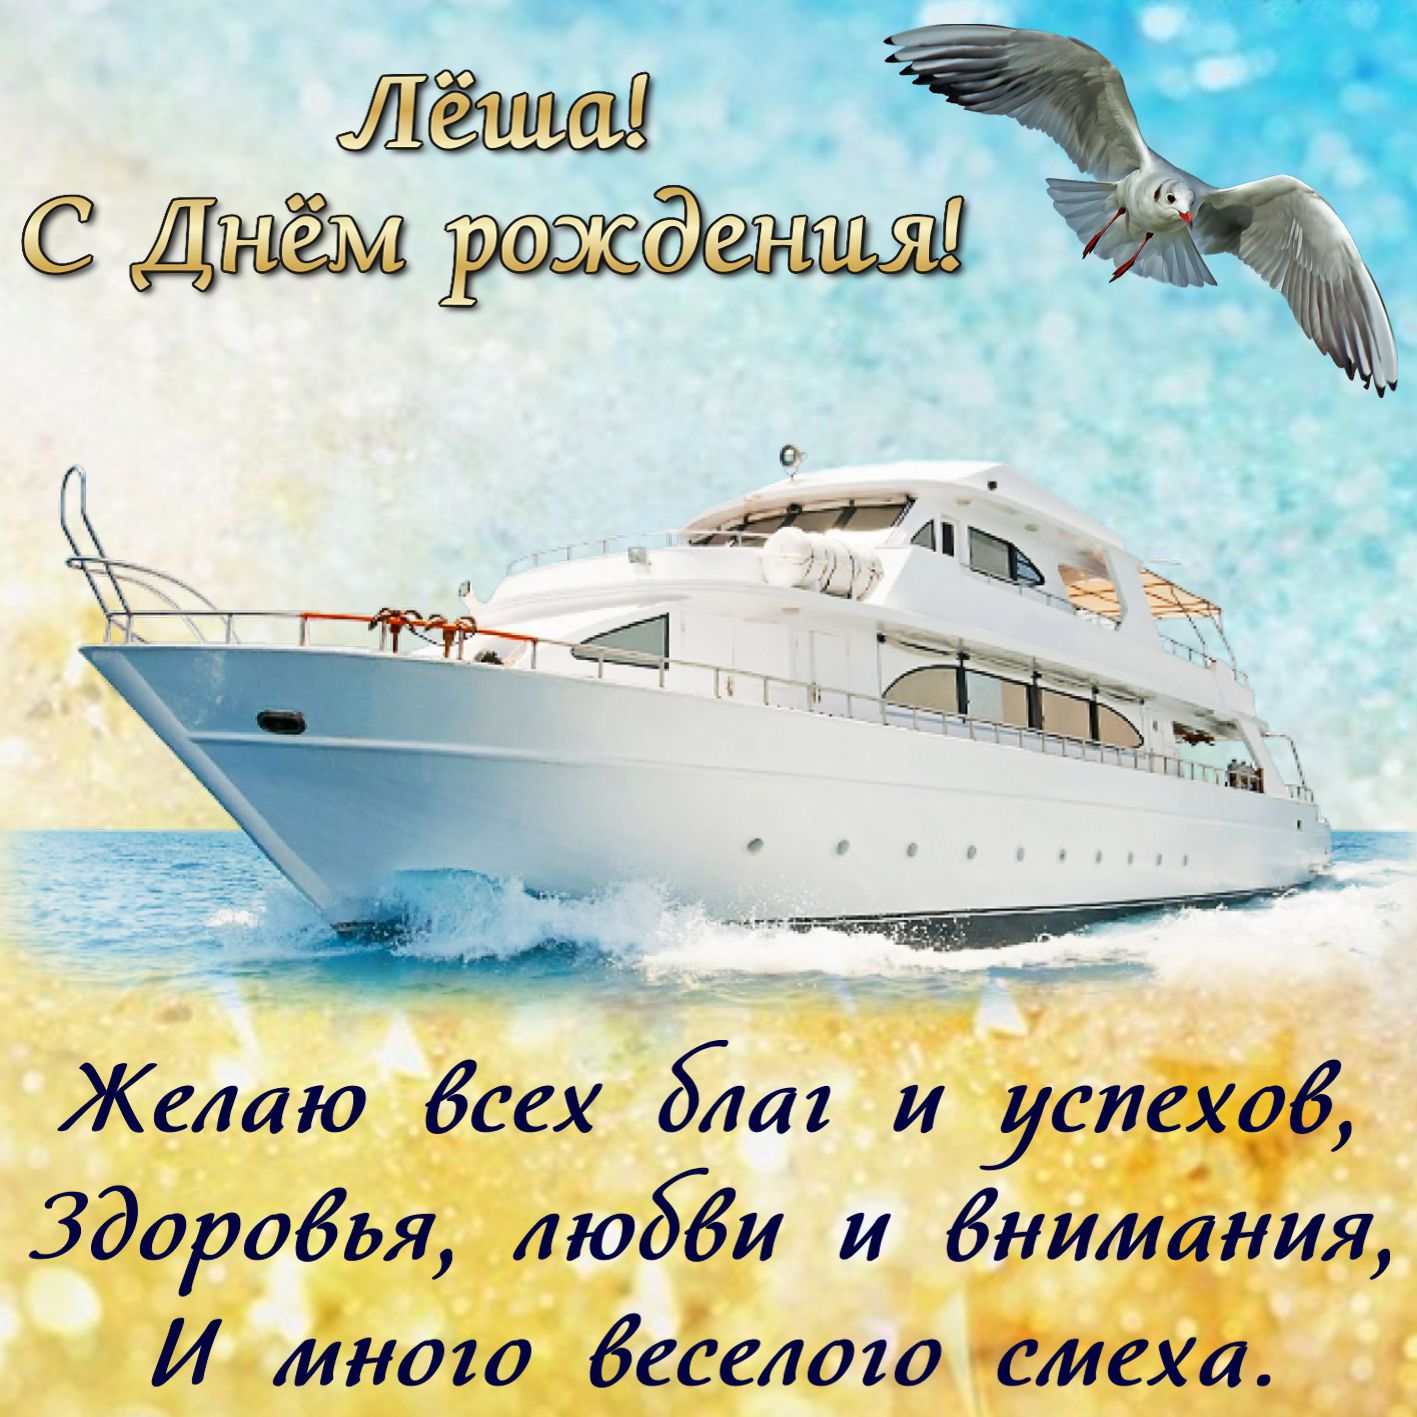 Картинка с яхтой Лёше на День рождения